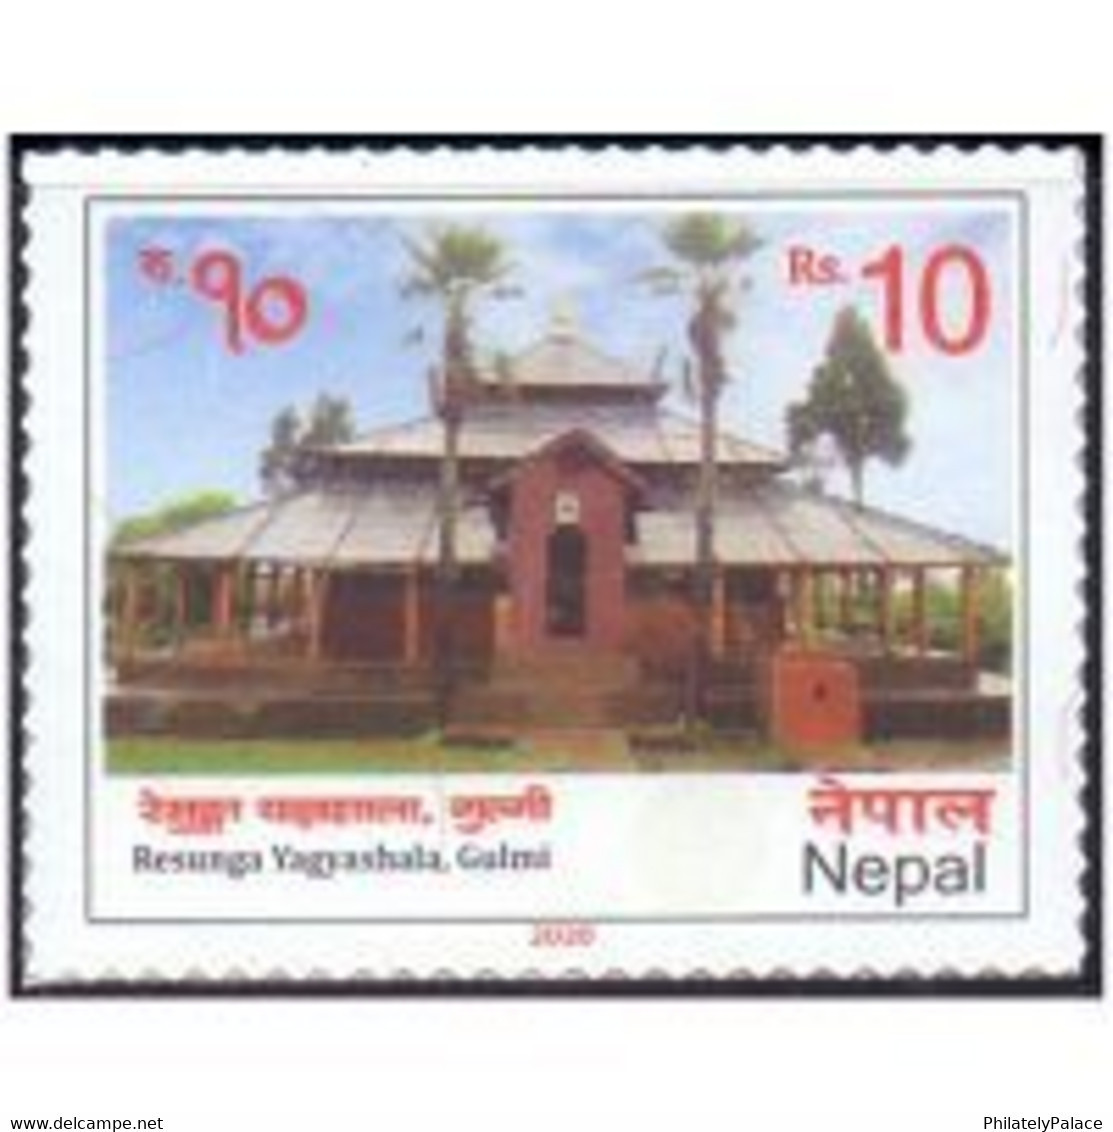 Nepal 2020 – Resunga Yagyashala, Gulmi 1v Stamp MNH  (**) - Nepal